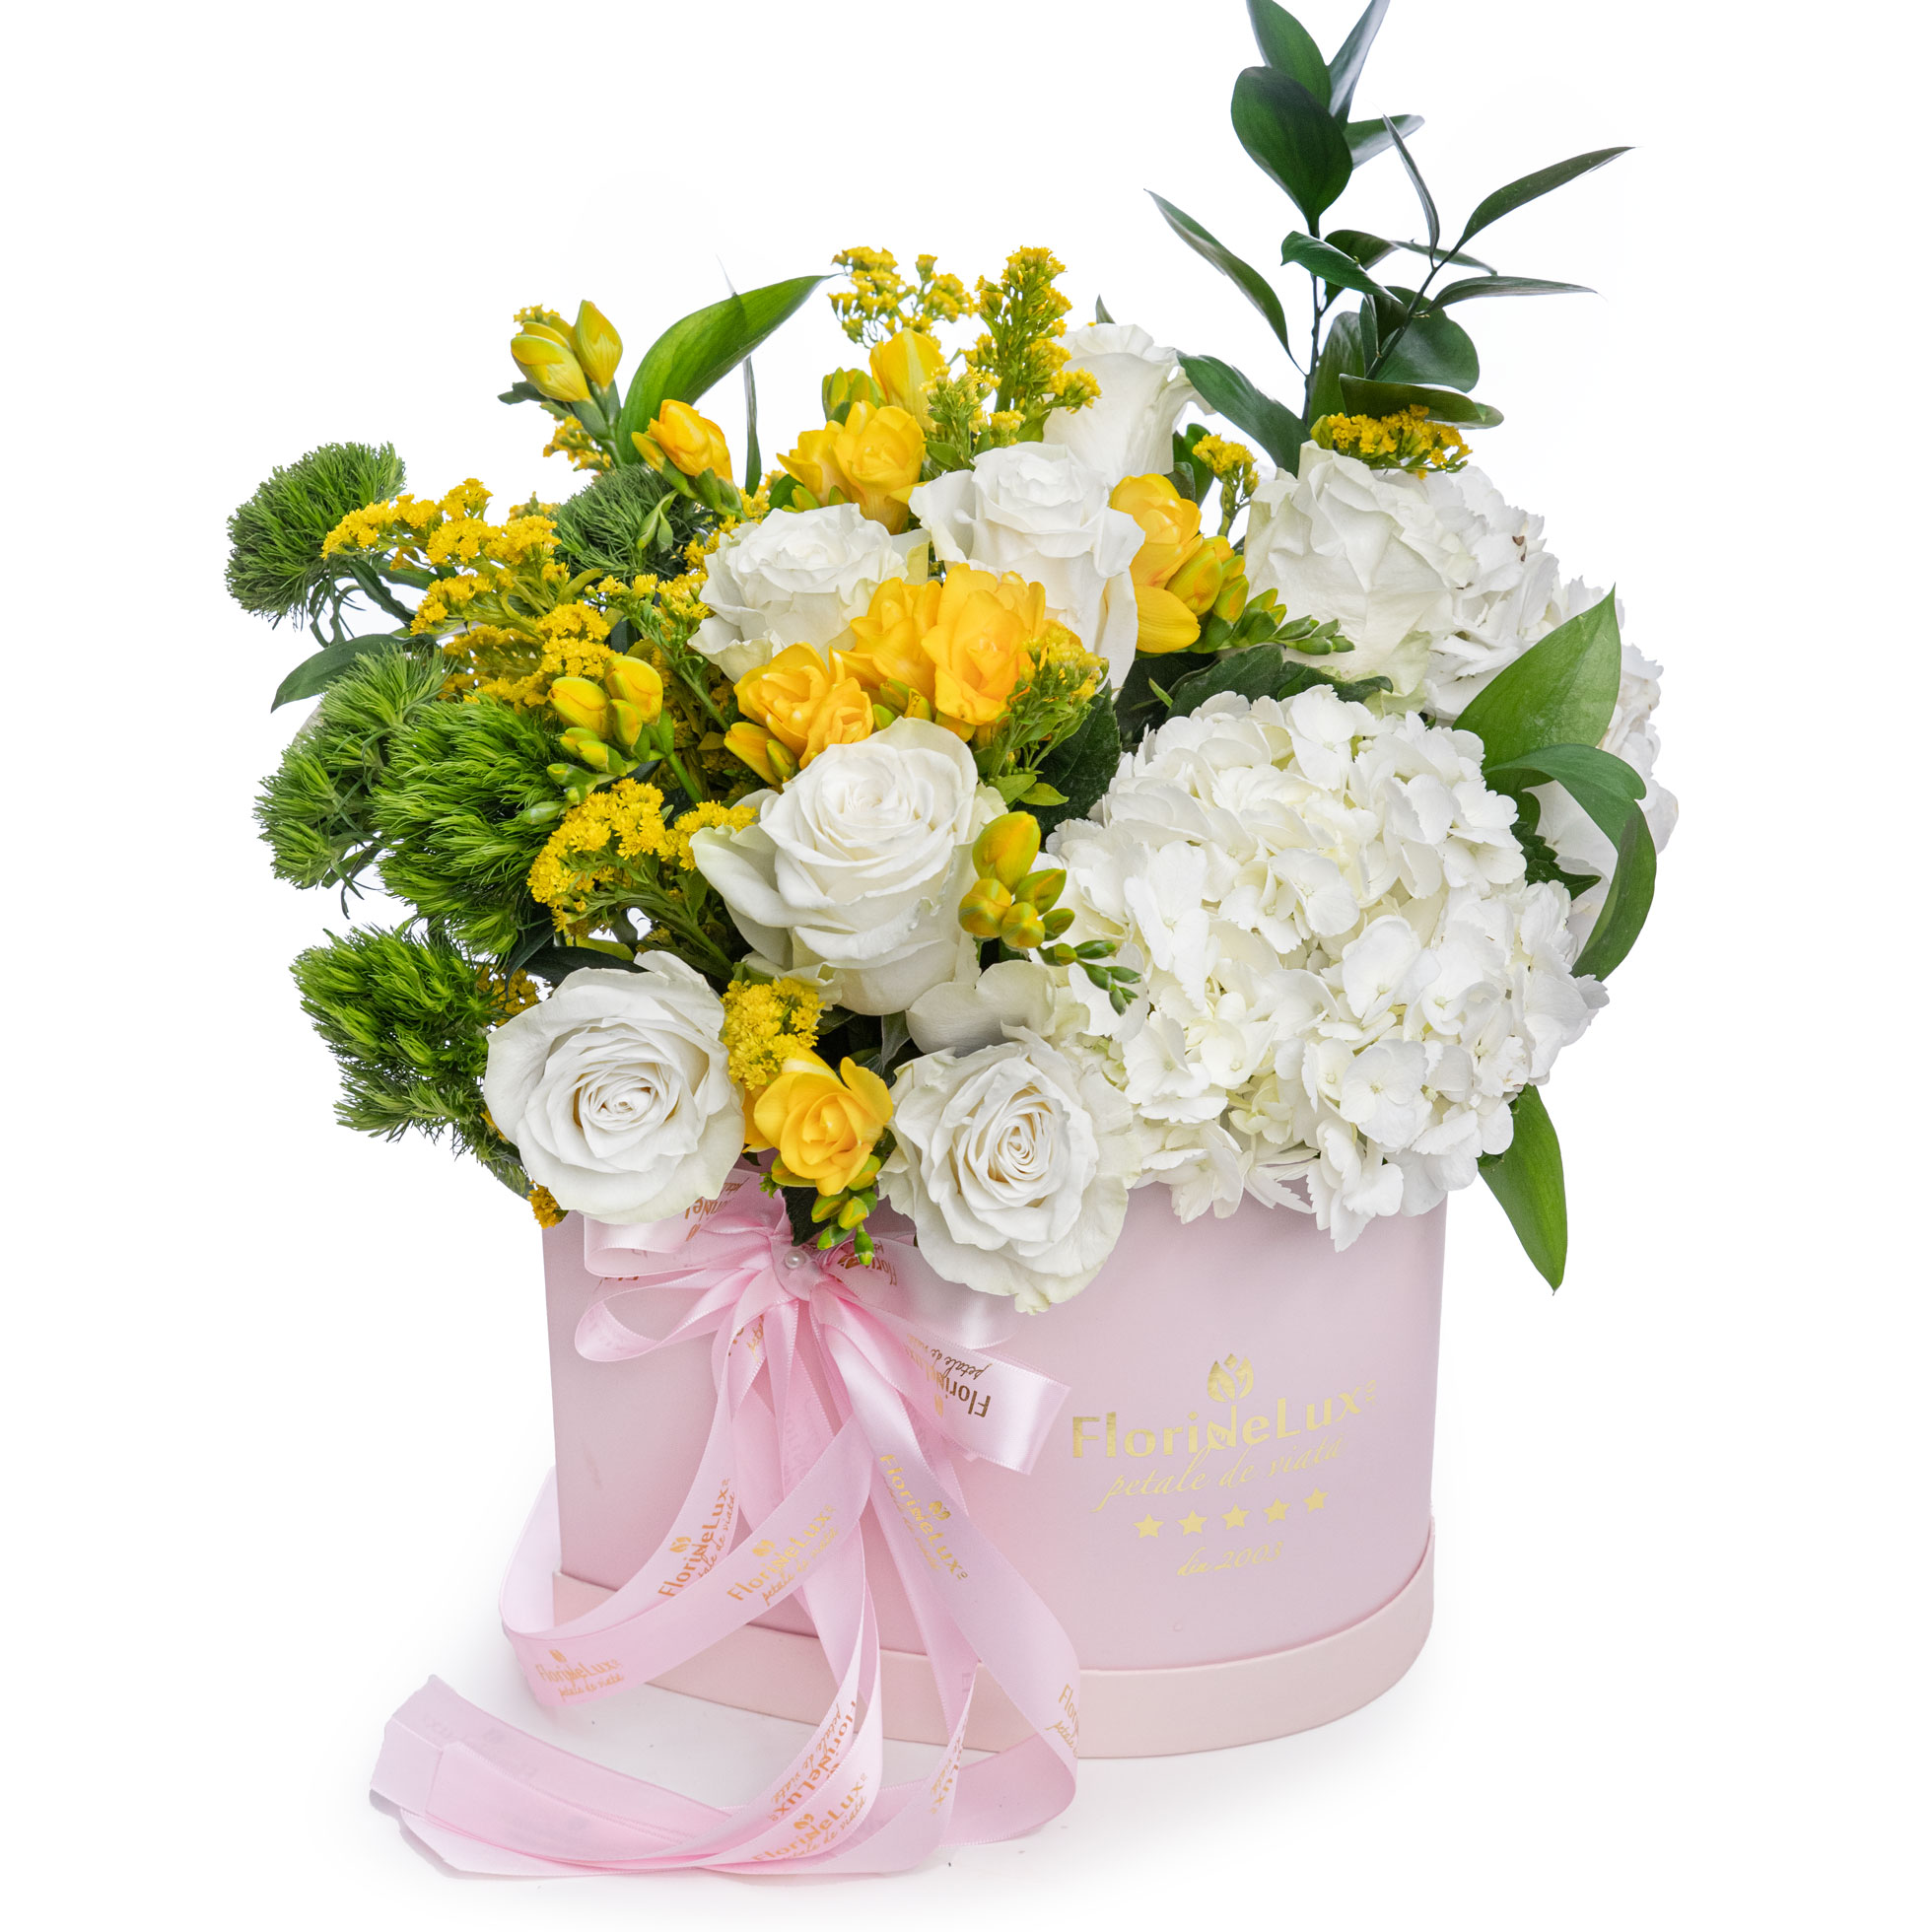 Aranjament floral cutie cu trandafiri, frezii si garoafe verzi